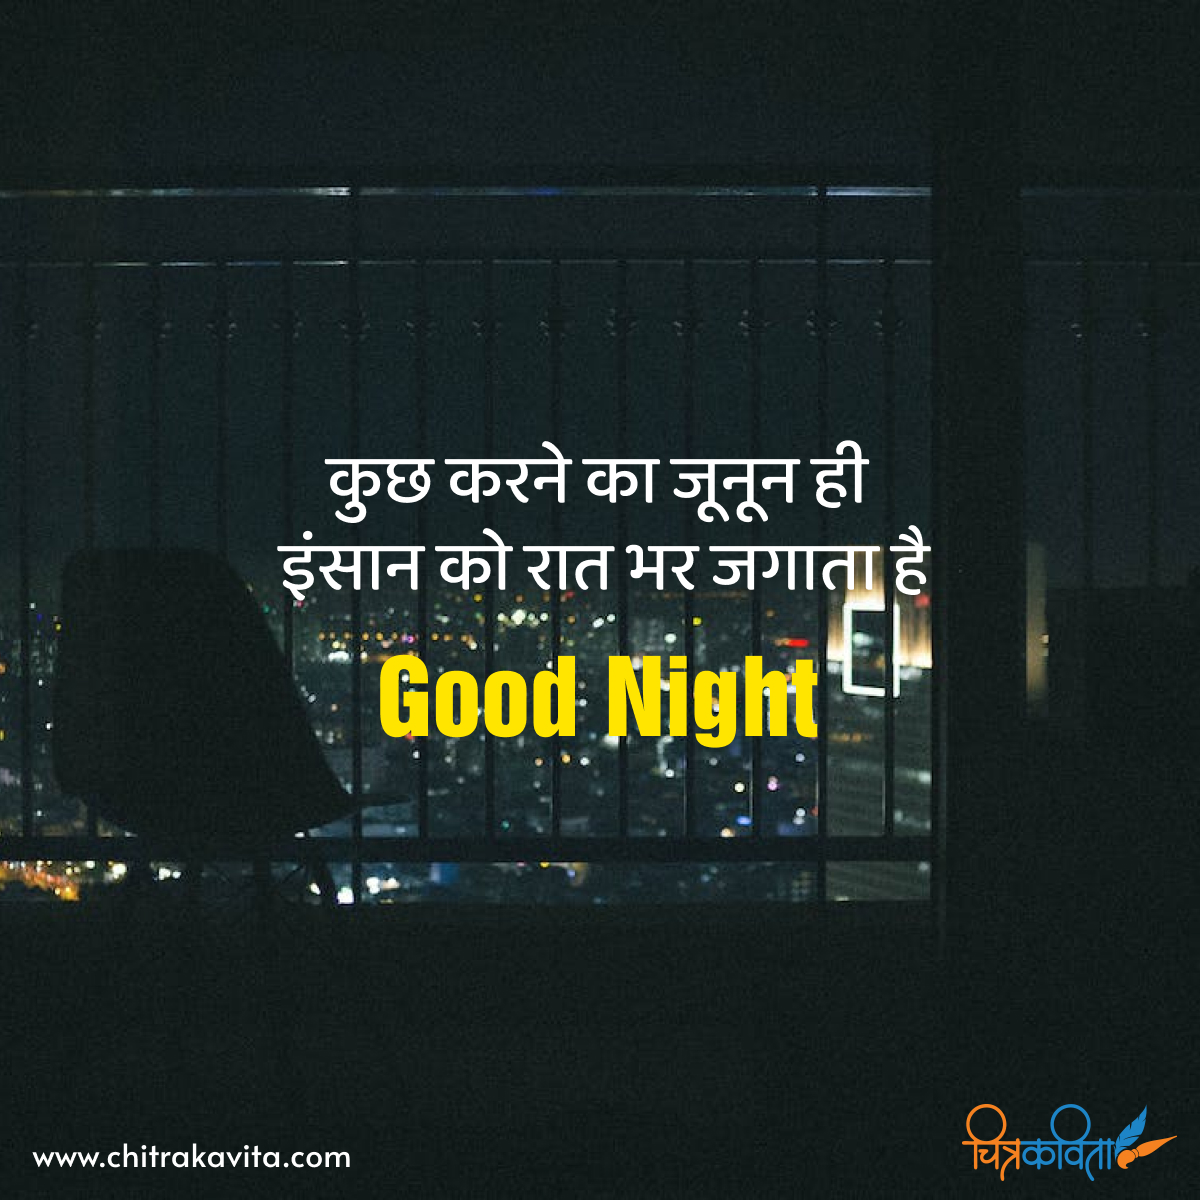 hindi good night quotes, hindi quotes, joonoon, dreams, quotes in hindi, status in hindi